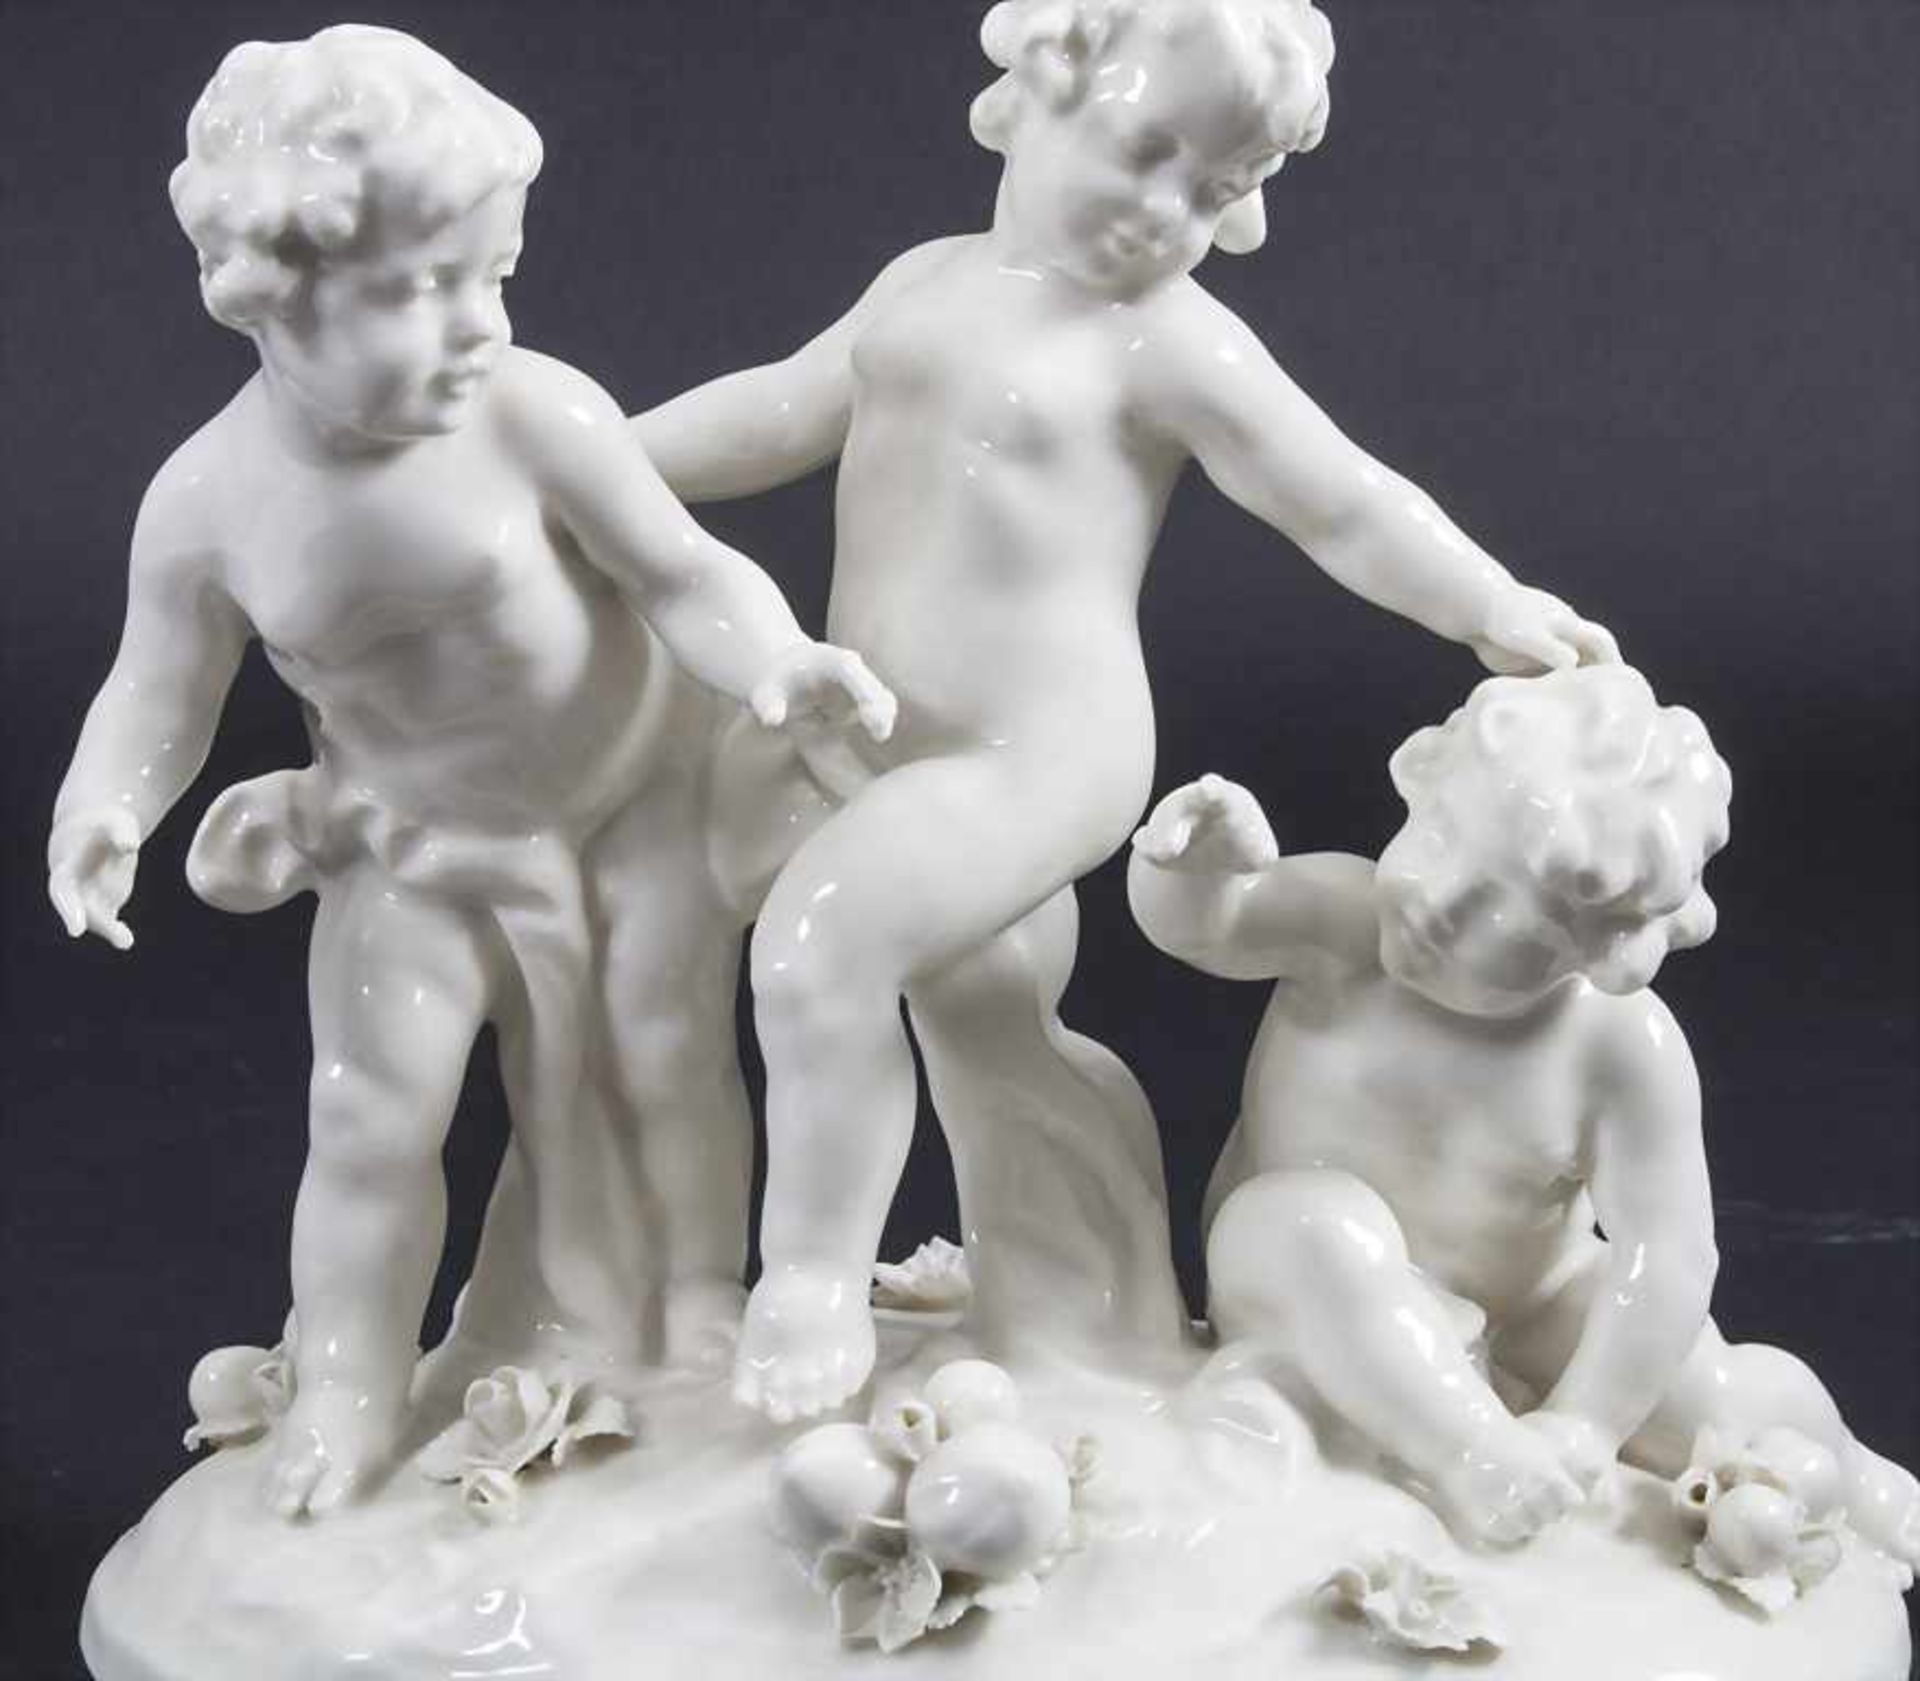 Figurengruppe 'Puttos mit Früchten' / A figural group 'Cherubs with fruits', von Scheirholz, - Bild 2 aus 8